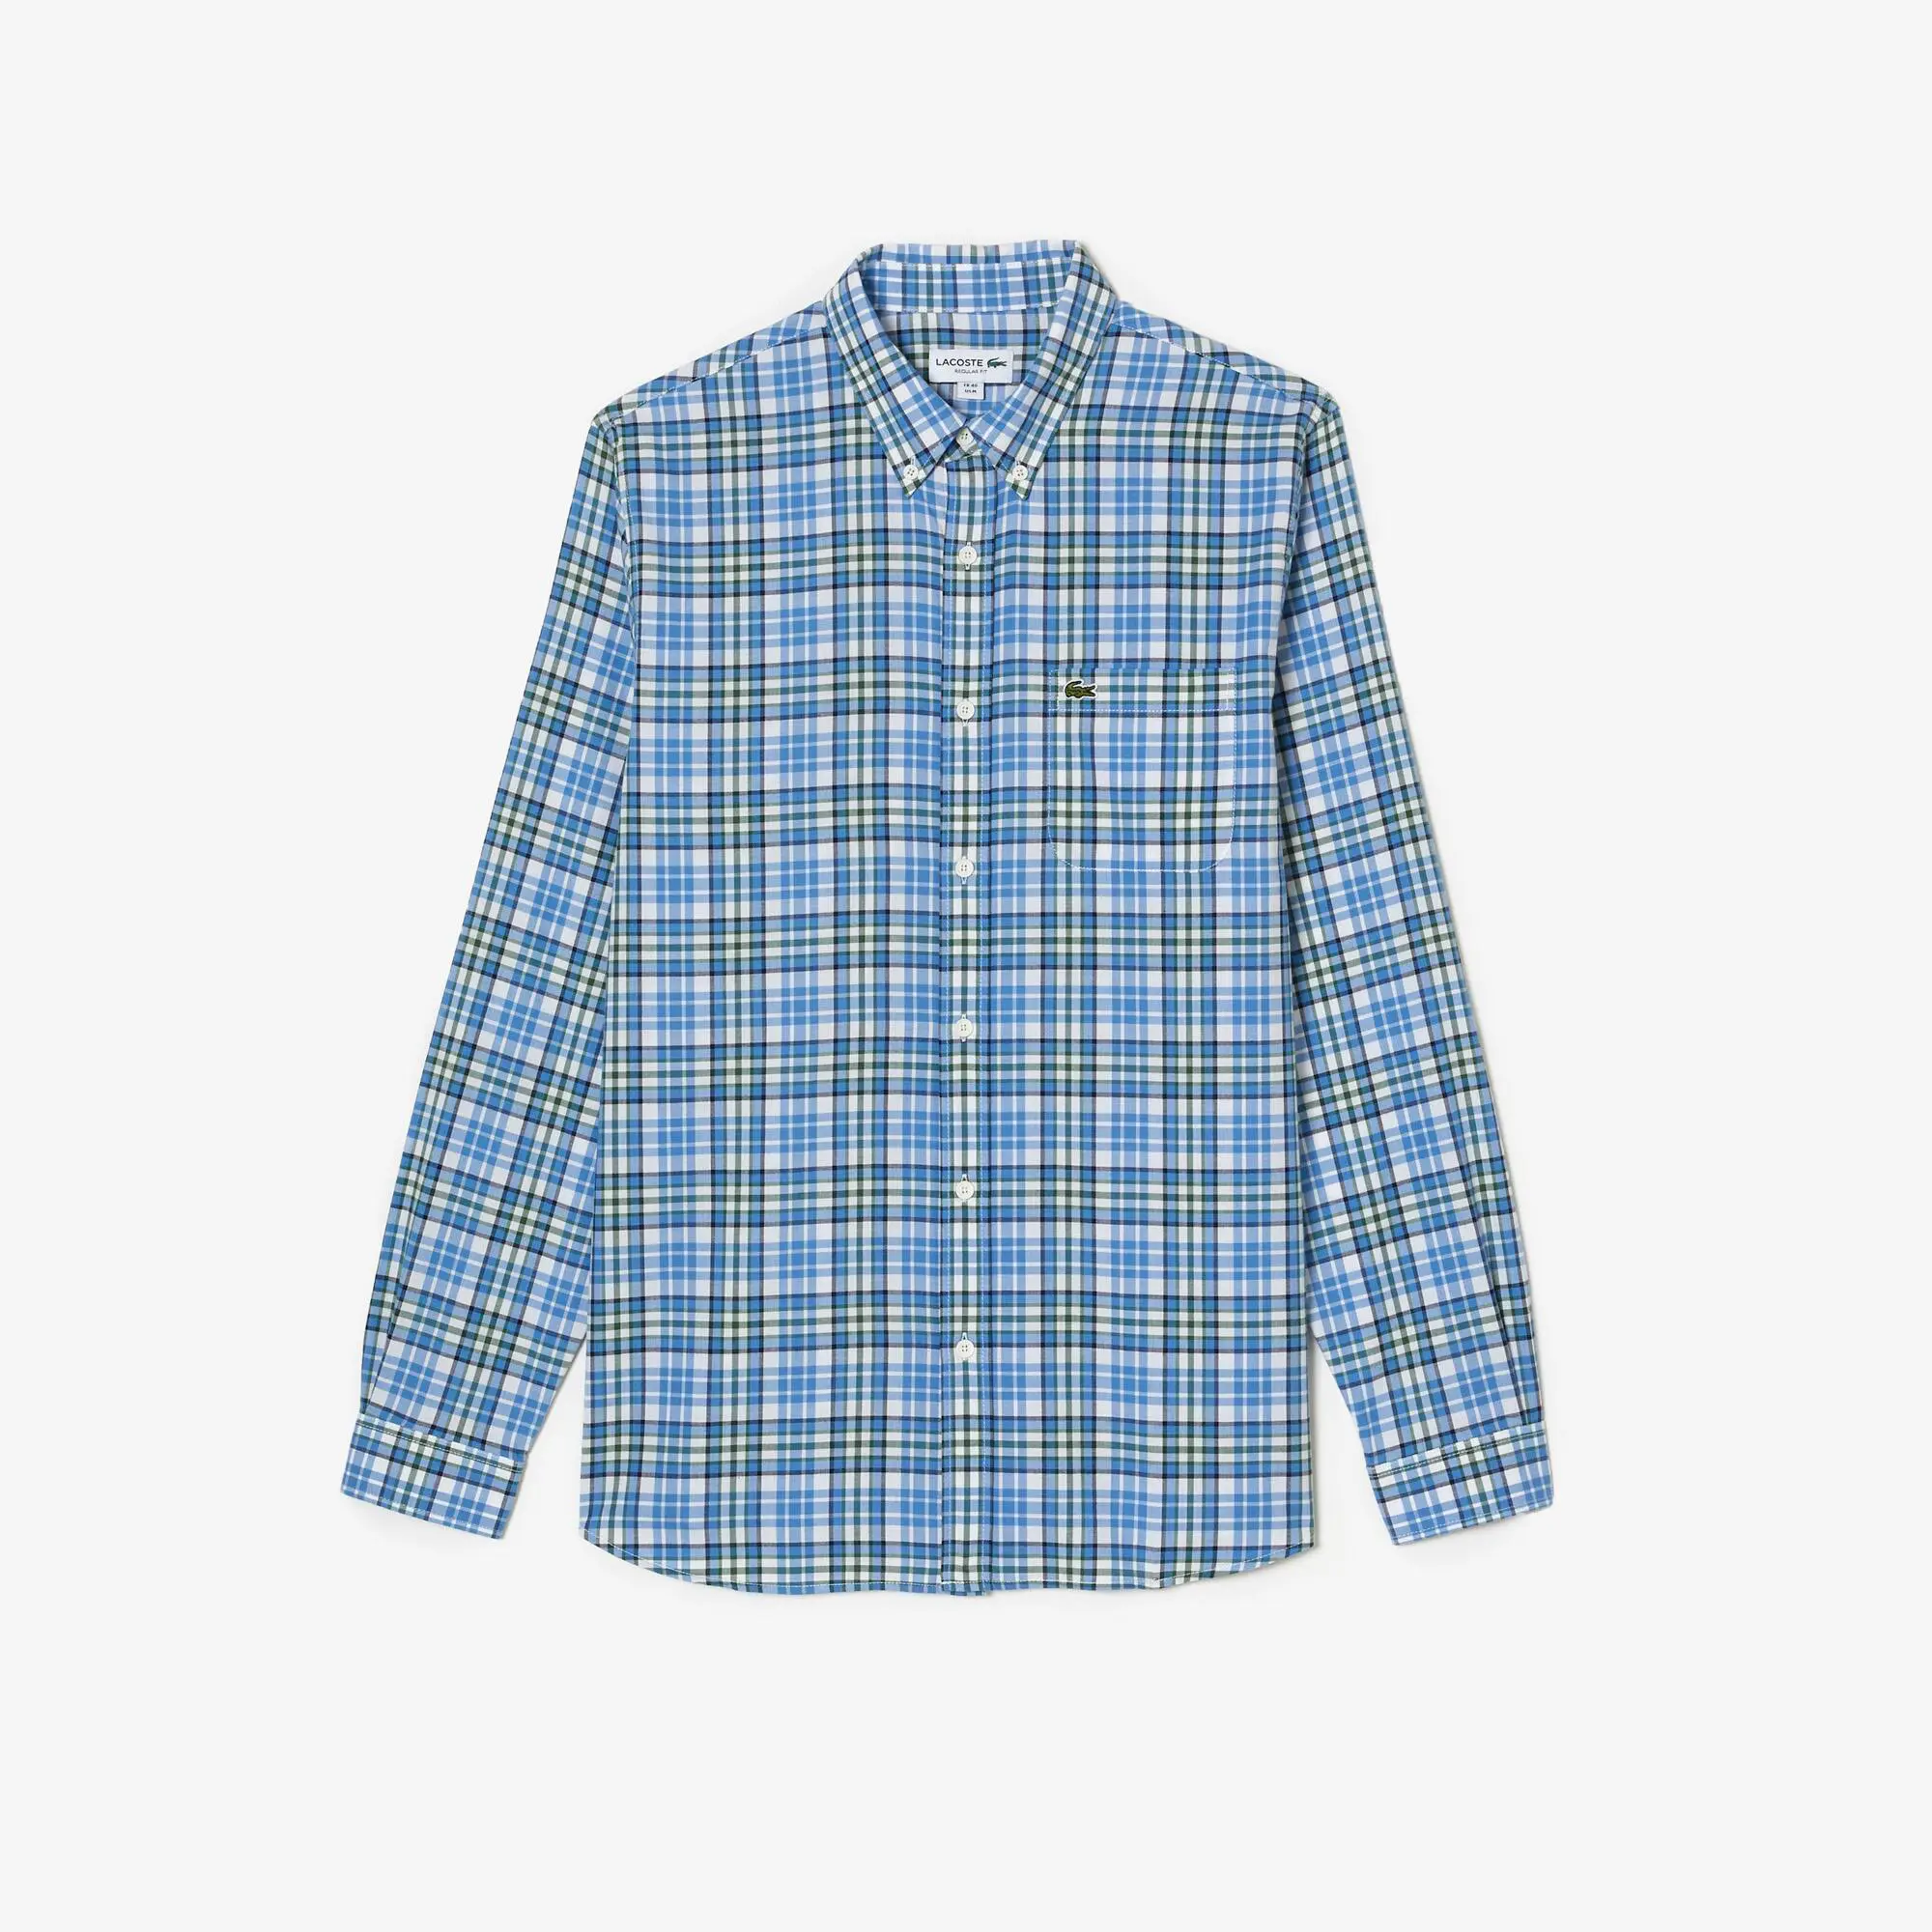 Lacoste Camisa de hombre Lacoste en algodón ecológico de cuadros. 2